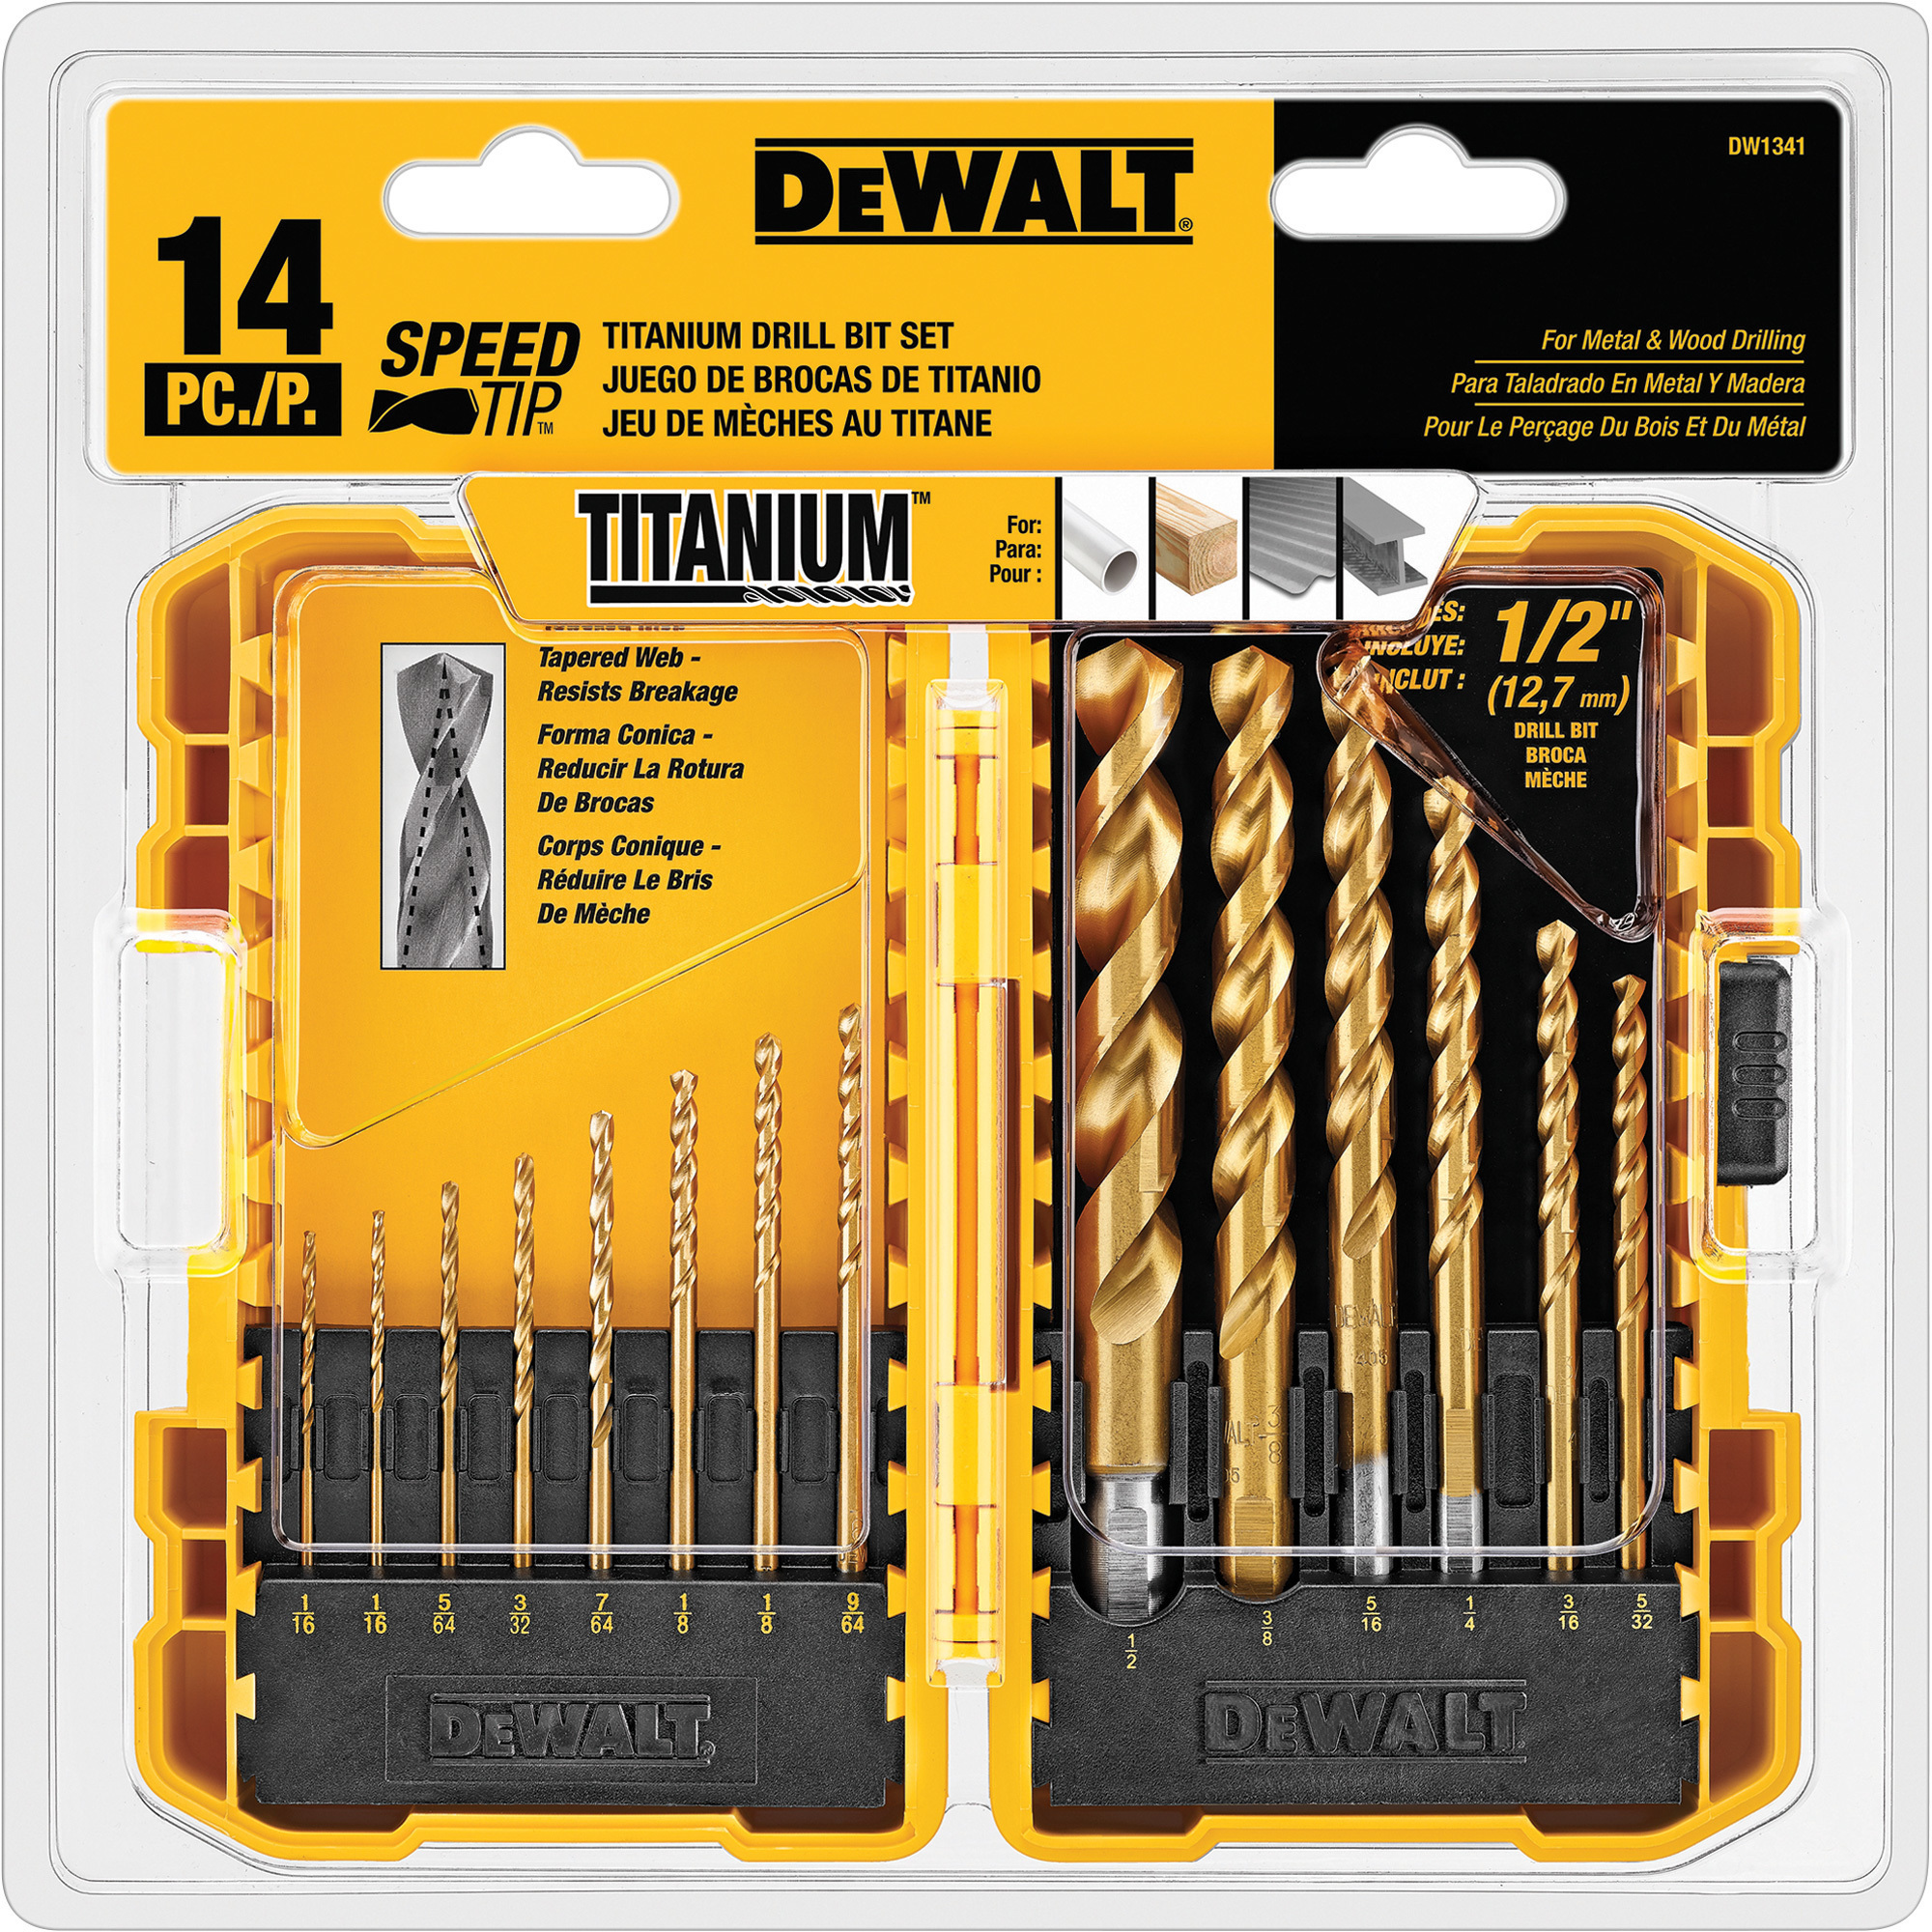 DEWALT Titanium Drill Bit Set, 14-Piece, Speed Tip, Model DW1341